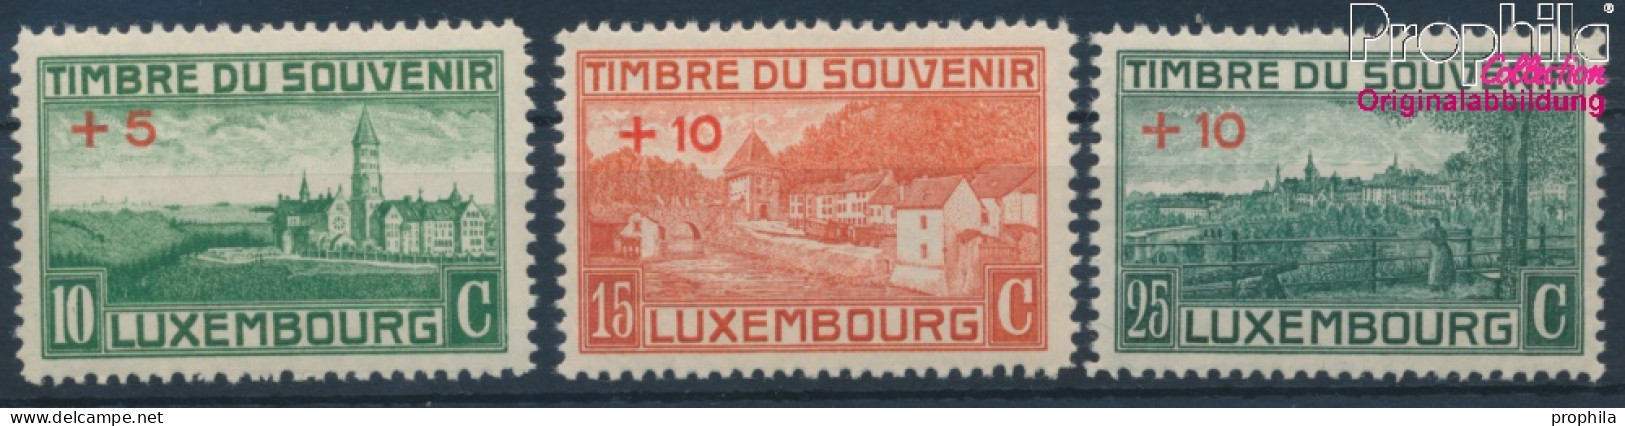 Luxemburg 137-139 (kompl.Ausg.) Postfrisch 1921 Kriegerdenkmal (10363335 - Ongebruikt